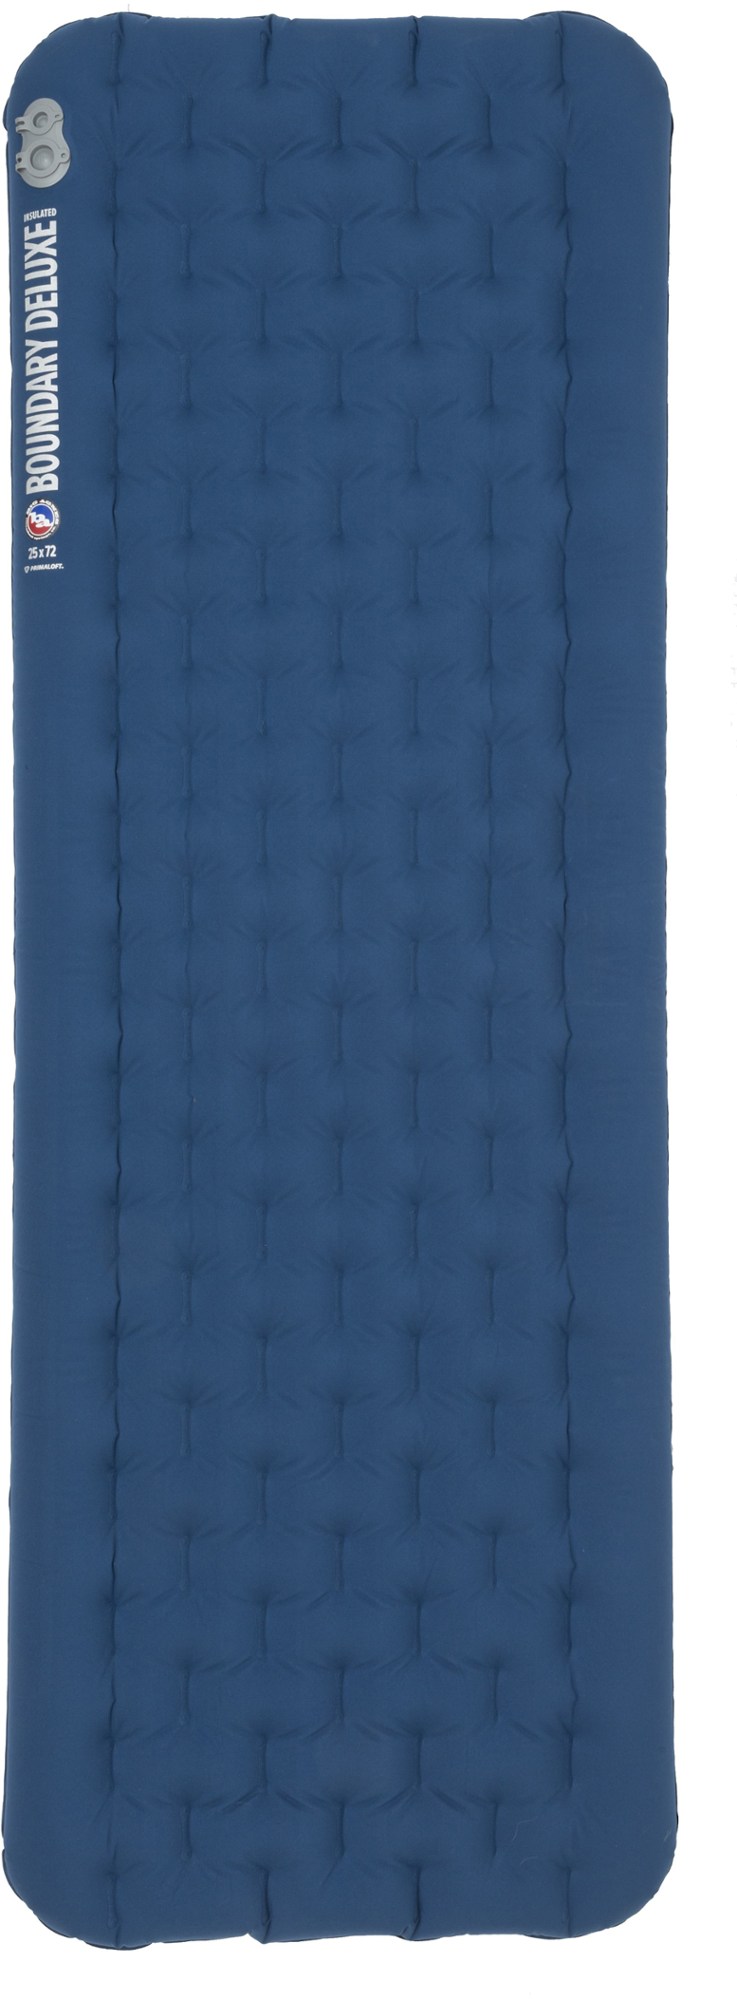 спальный коврик хинман big agnes синий Изолированный спальный коврик Boundary Deluxe Big Agnes, синий